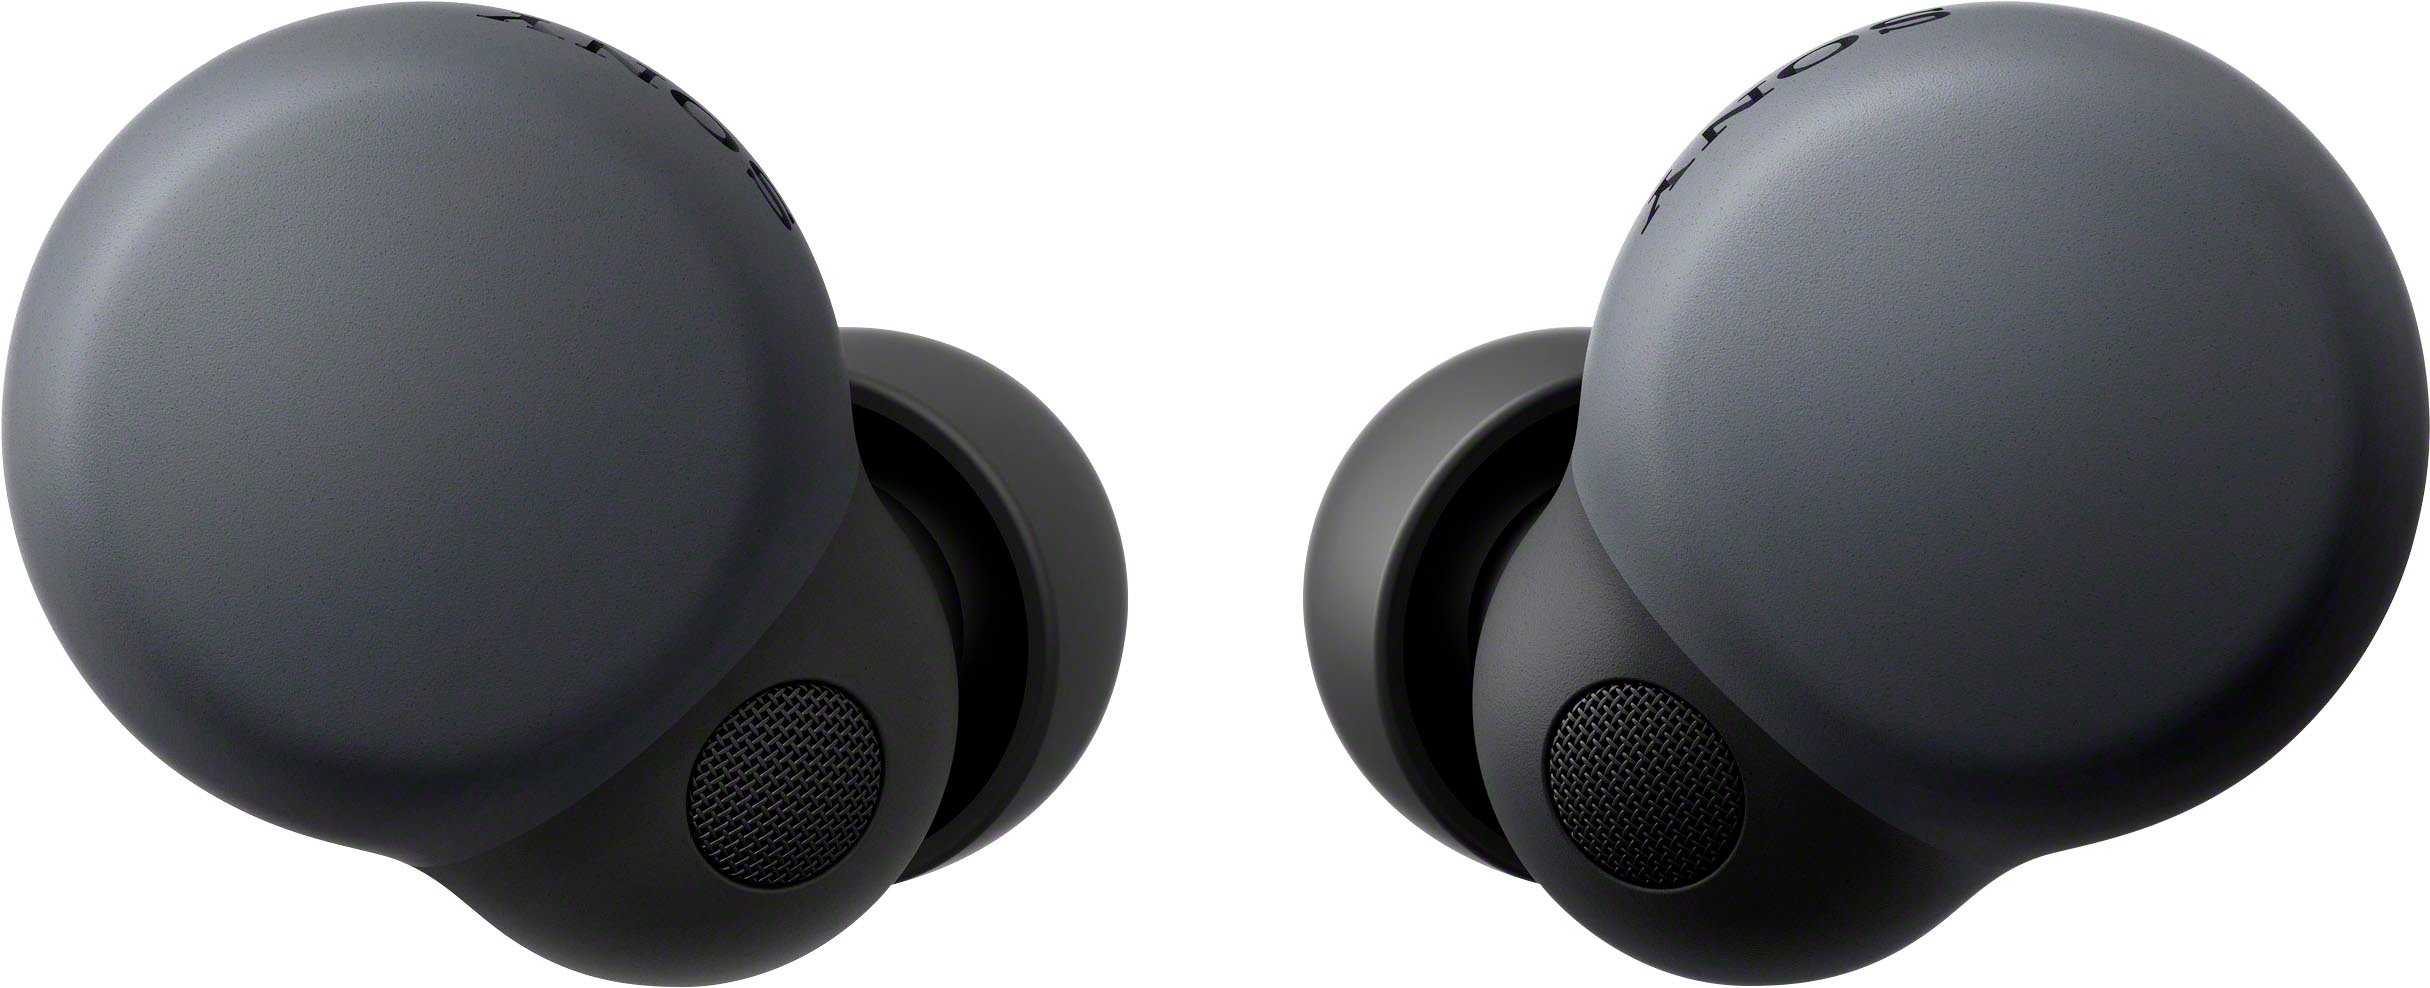 Sony LinkBuds S True Wireless Noise Canceling Earbuds Black 